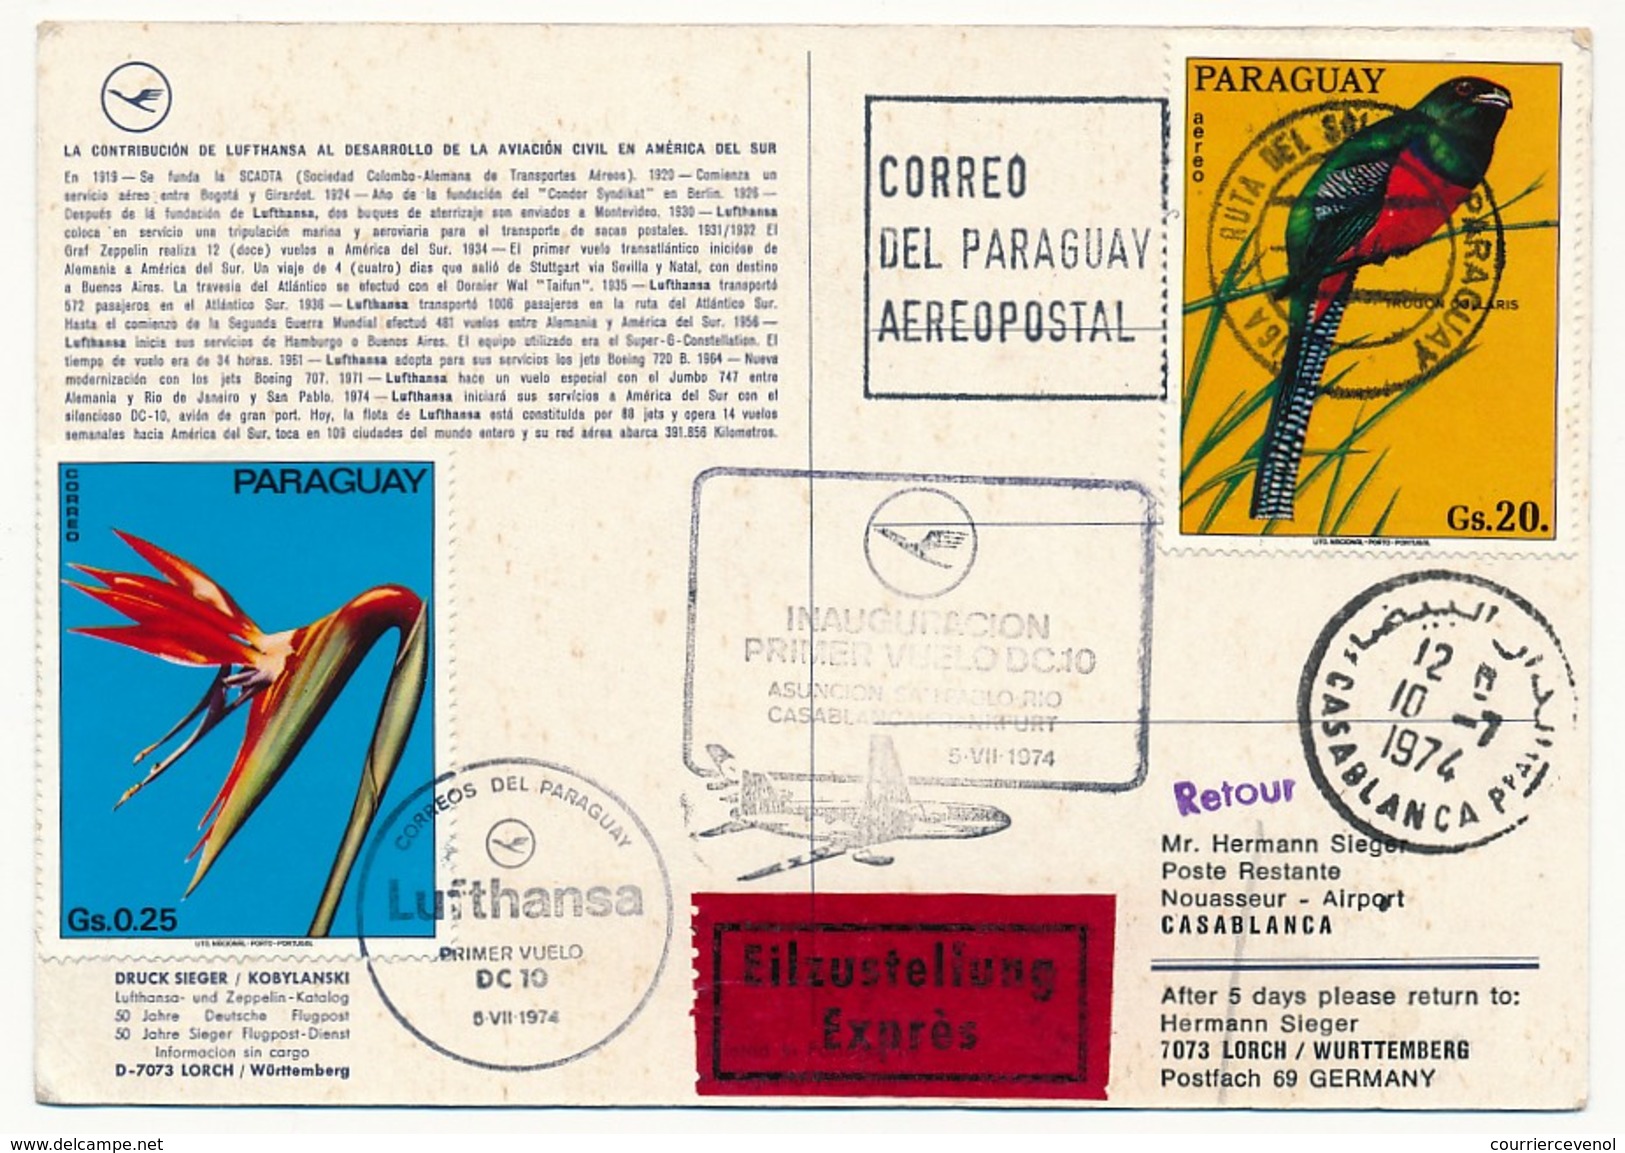 PARAGUAY - Carte Premier Vol Lufthansa DC10 - Ascuncion => Rio => Casablanca => Francfort 1974 - Paraguay